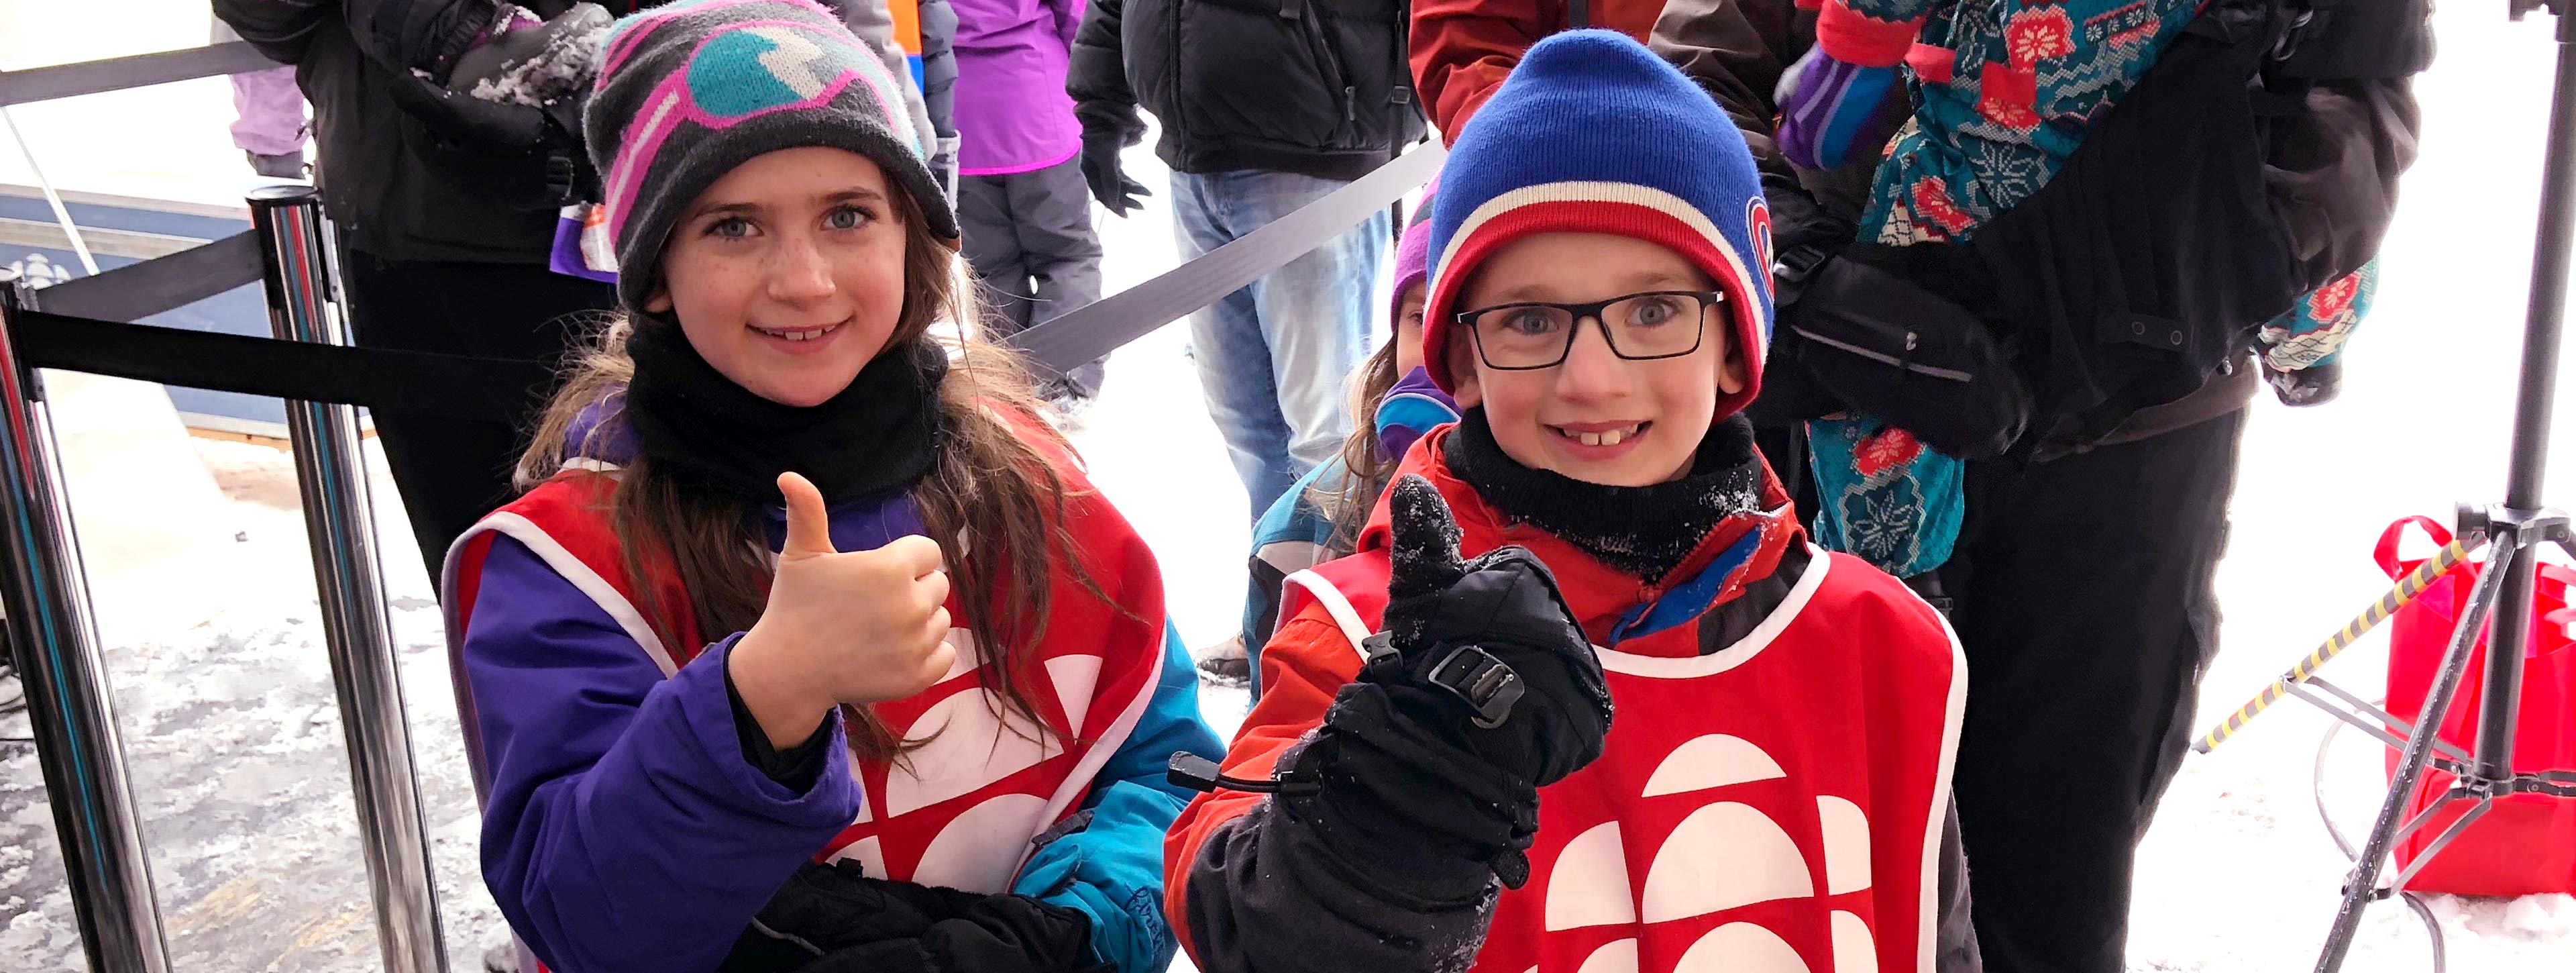 Des enfants à notre station de visionnement olympique PyeongChang 2018 à Ottawa.